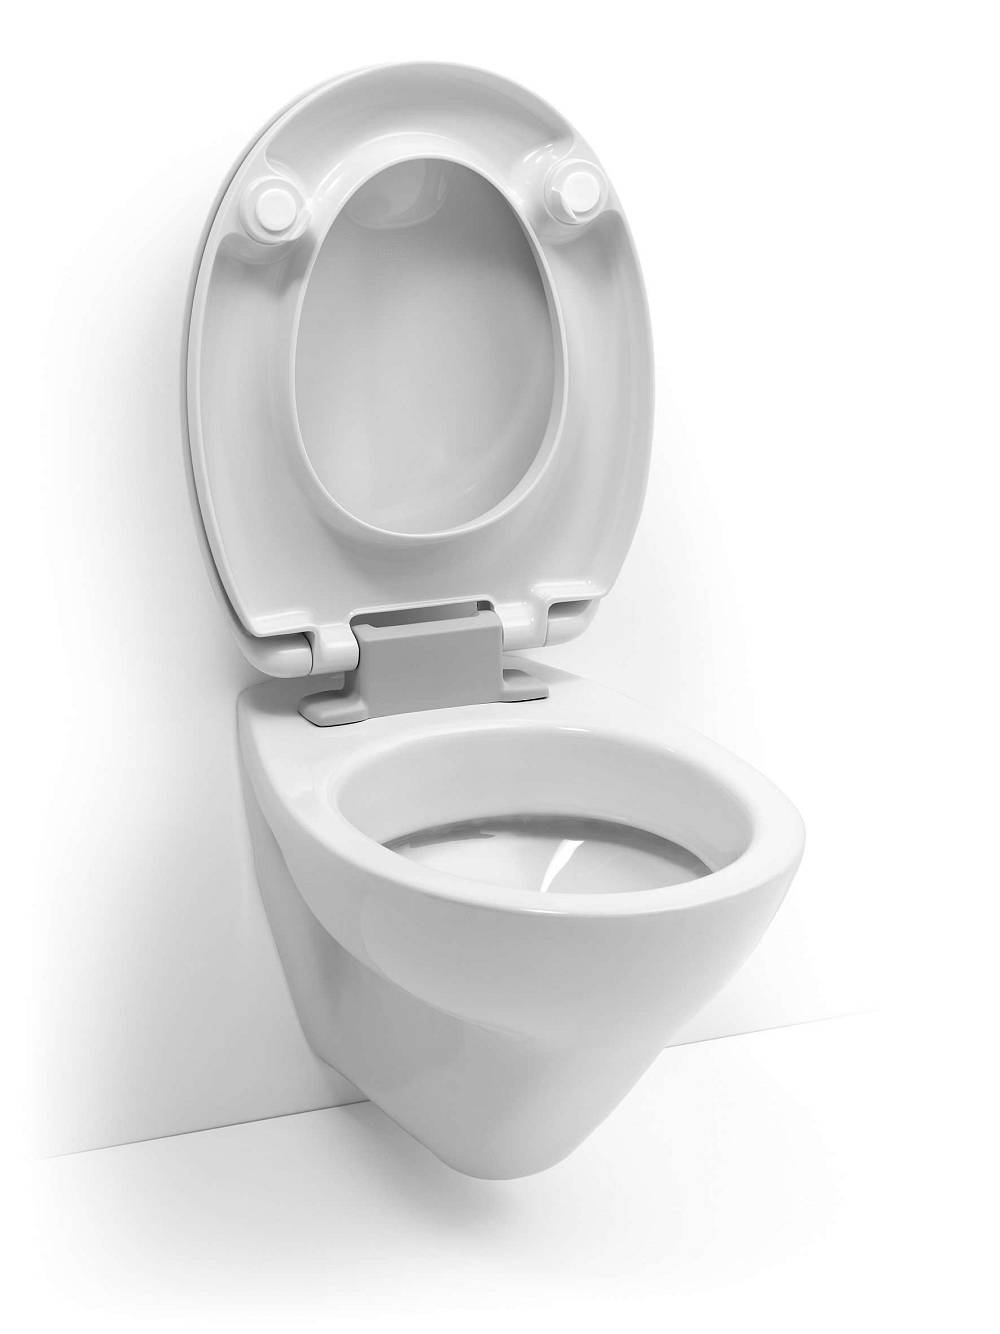 Darstellung komplett geöffneter HAROMED Toilettensitz mit SoftClose®.